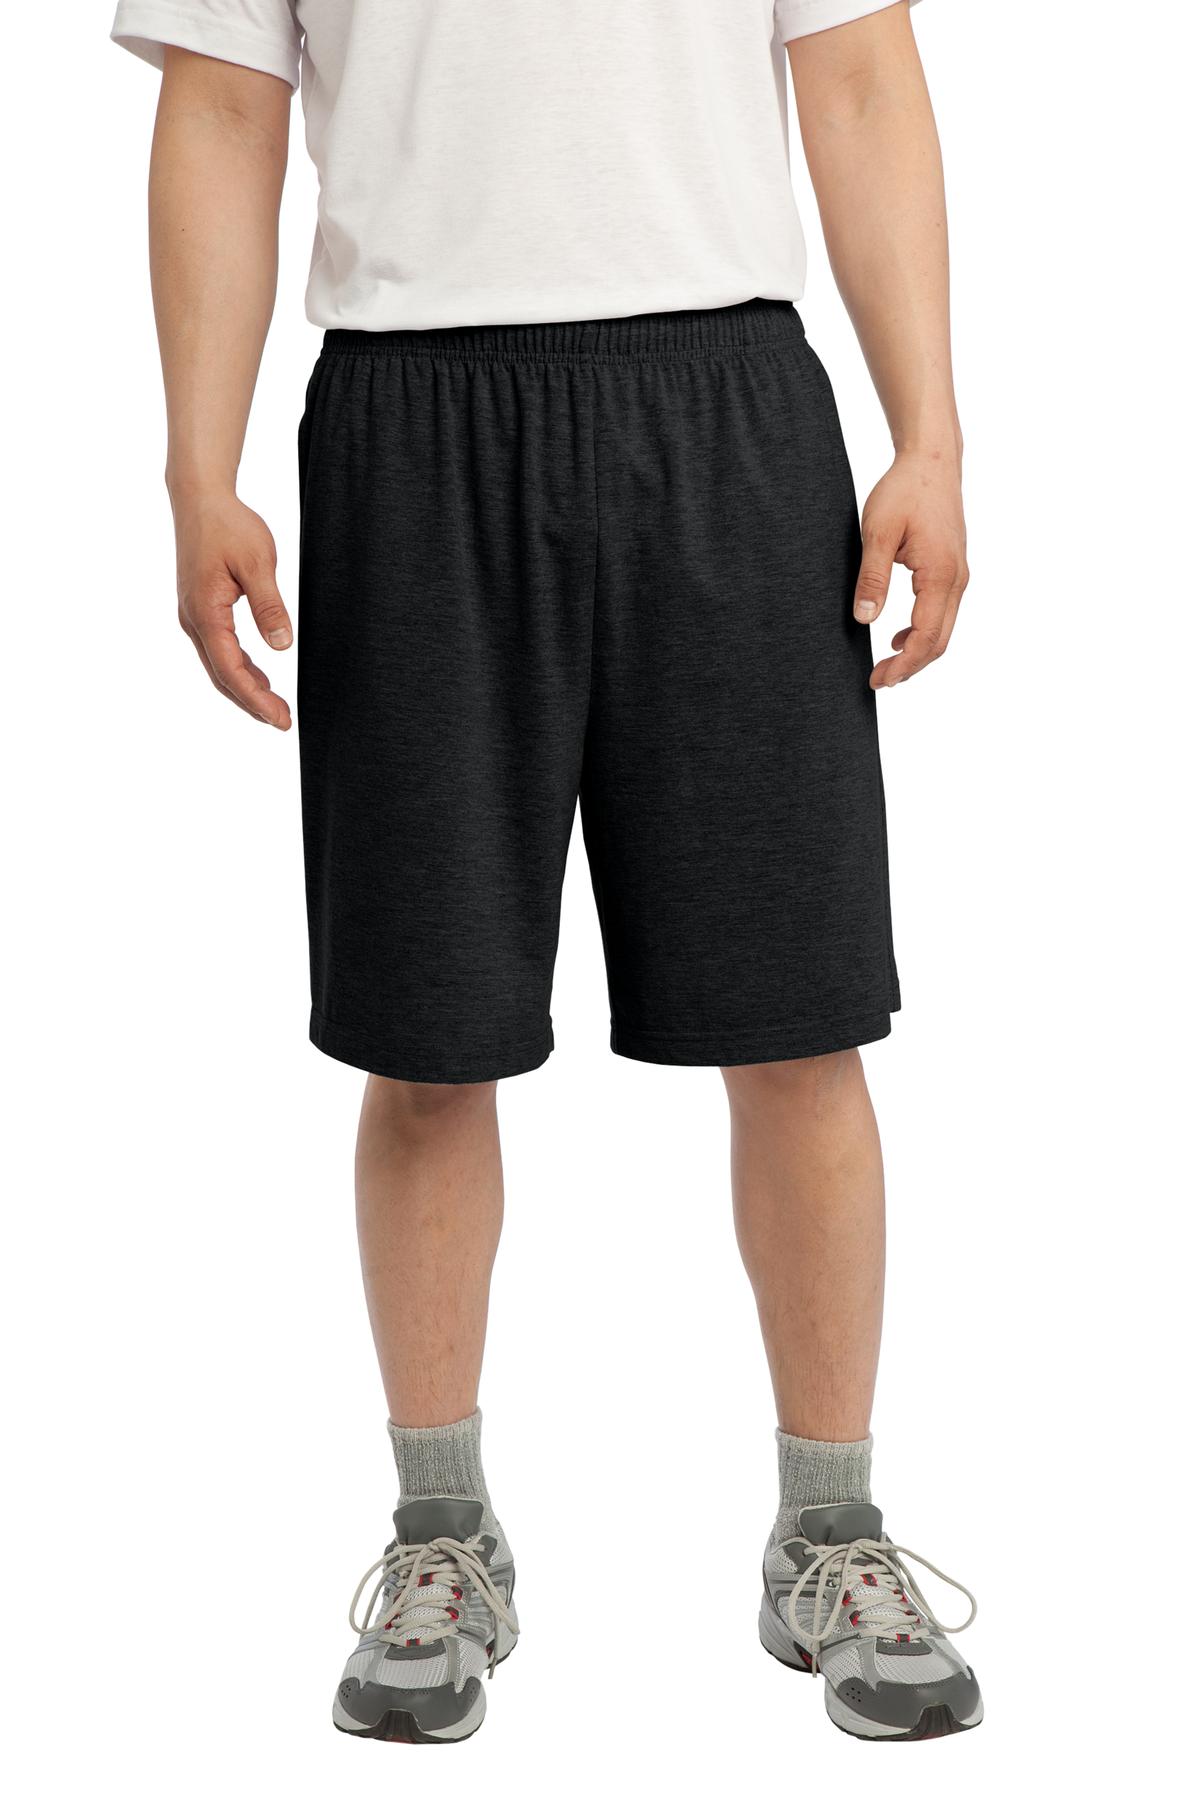 Sport-Tek Jersey Knit Short with Pockets - ST310